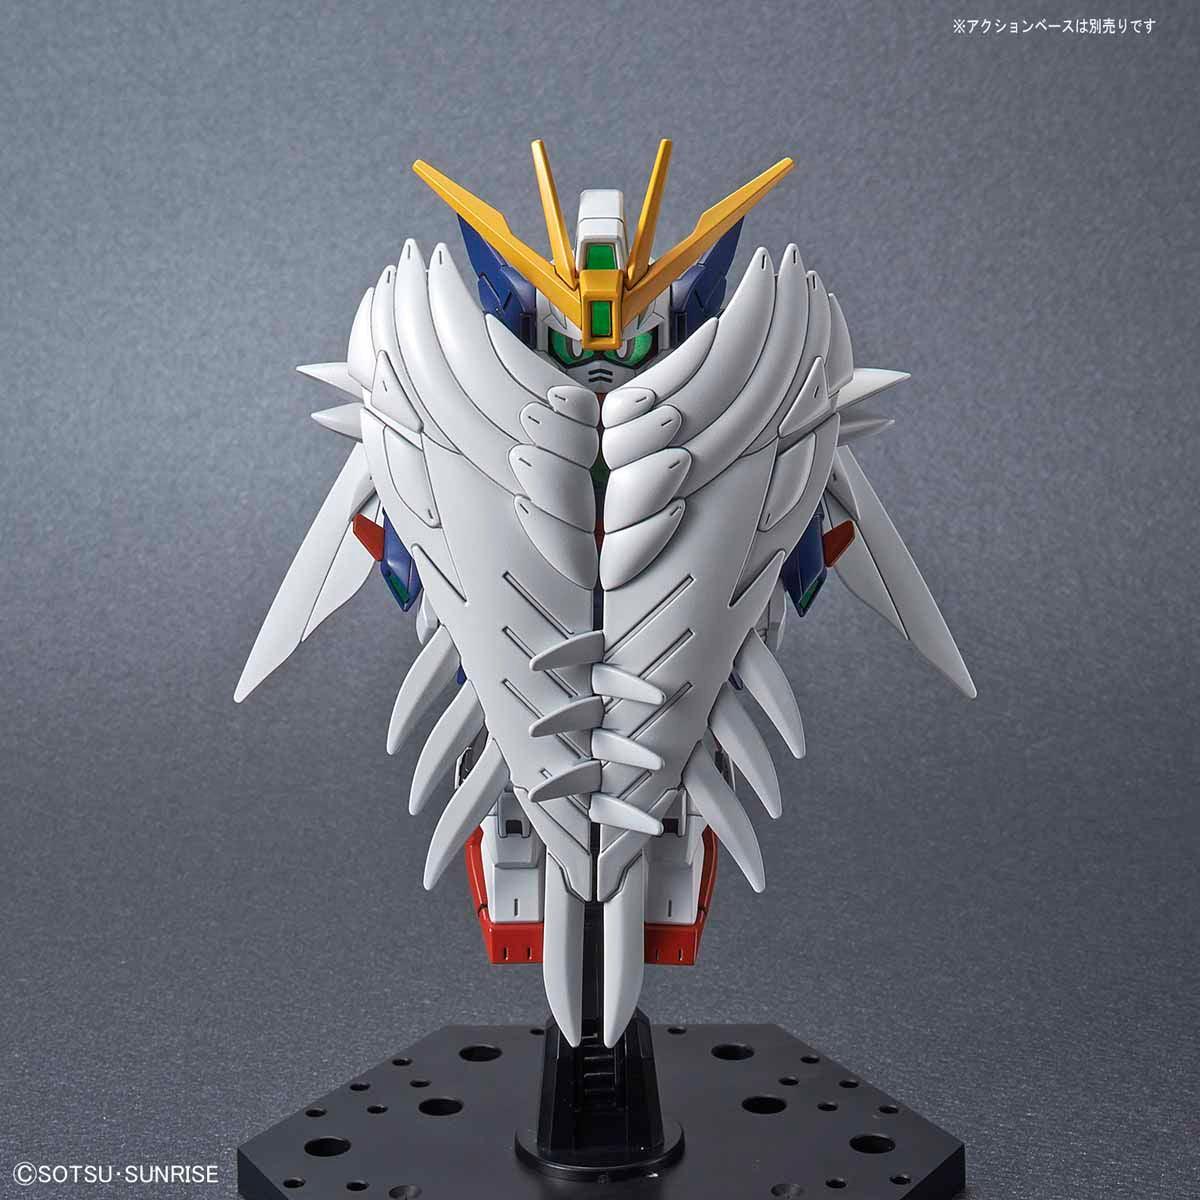 Cross Silhouette - XXXG-00W0 Wing Gundam Zero EW